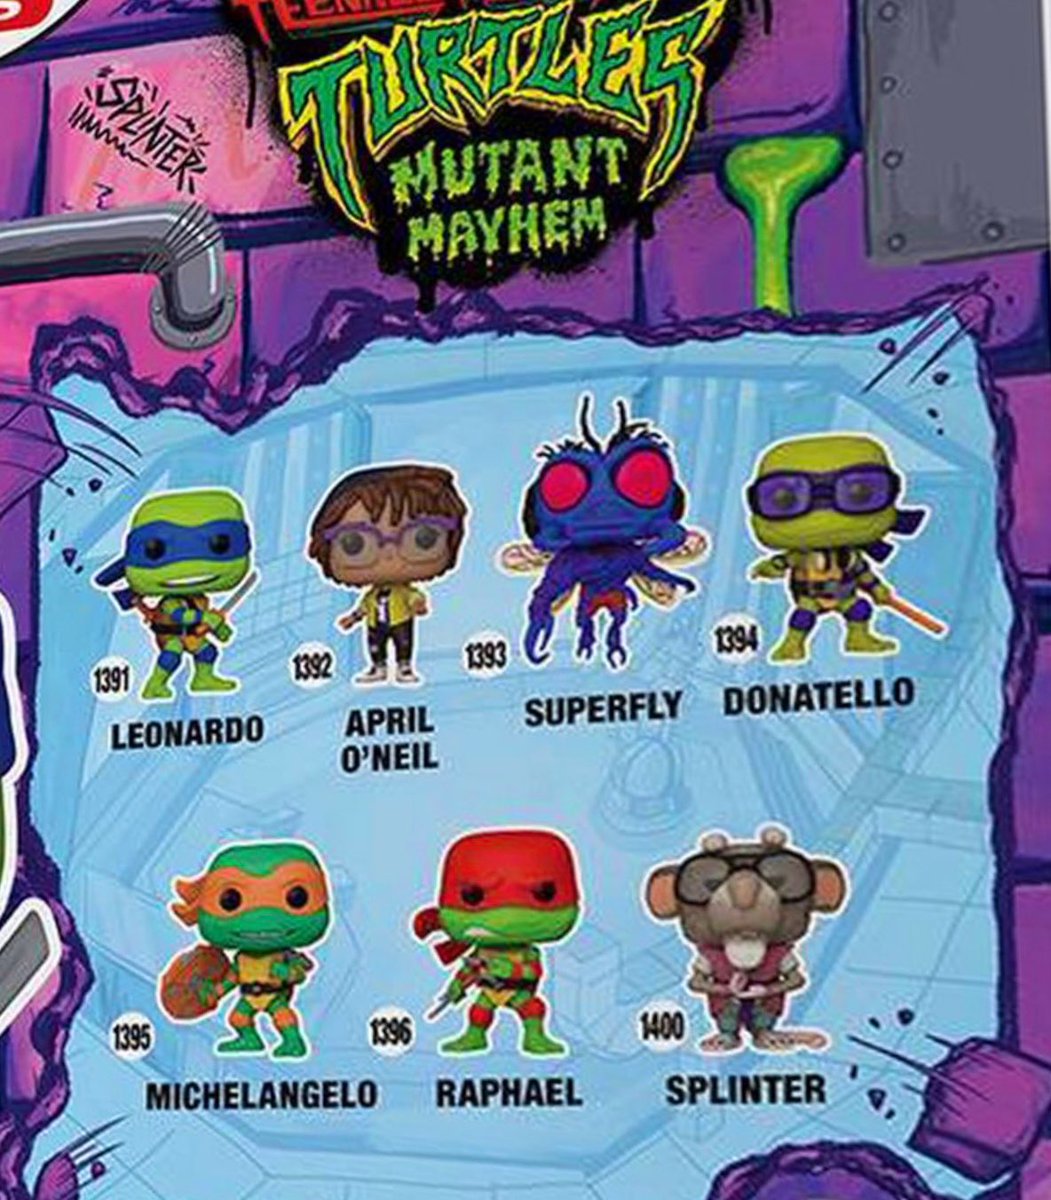 First look at the new Teenage Mutant Ninja Turtles Mutant Mayhem Funko POPs! #TMNT #TeenageMutantNinjaTurtles #MutantMayhem #FPN #FunkoPOPNews #Funko #POP #POPVinyl #FunkoPOP #FunkoSoda